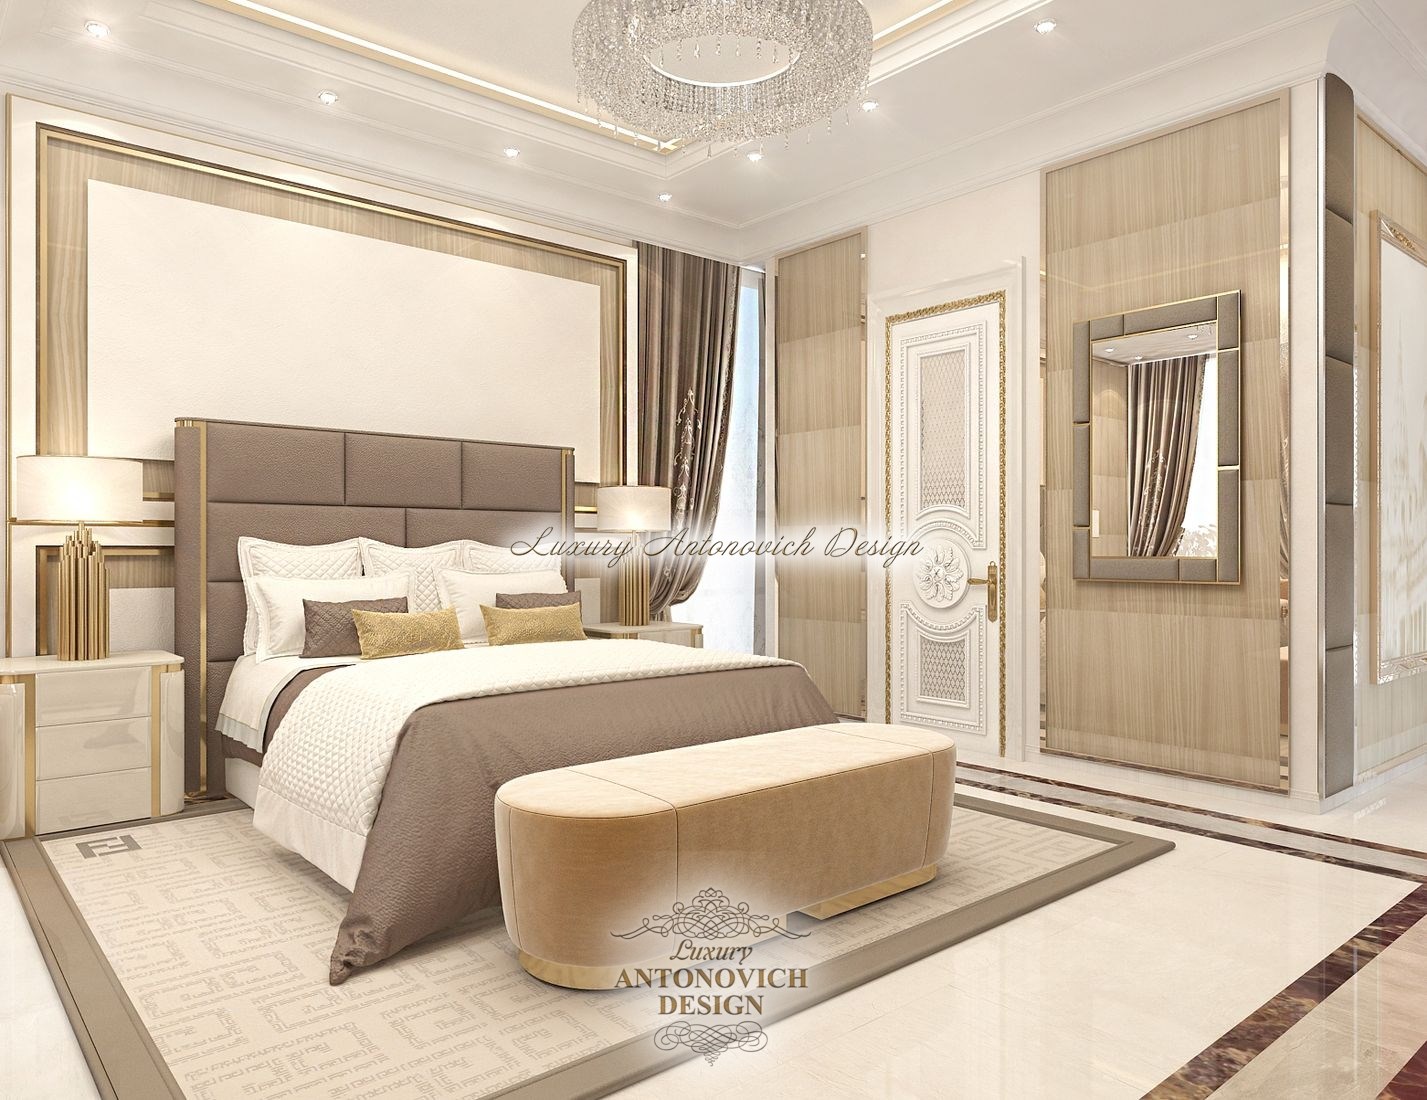 ≡ Мебель на заказ Астана недорого - цены, отзывы, фото 